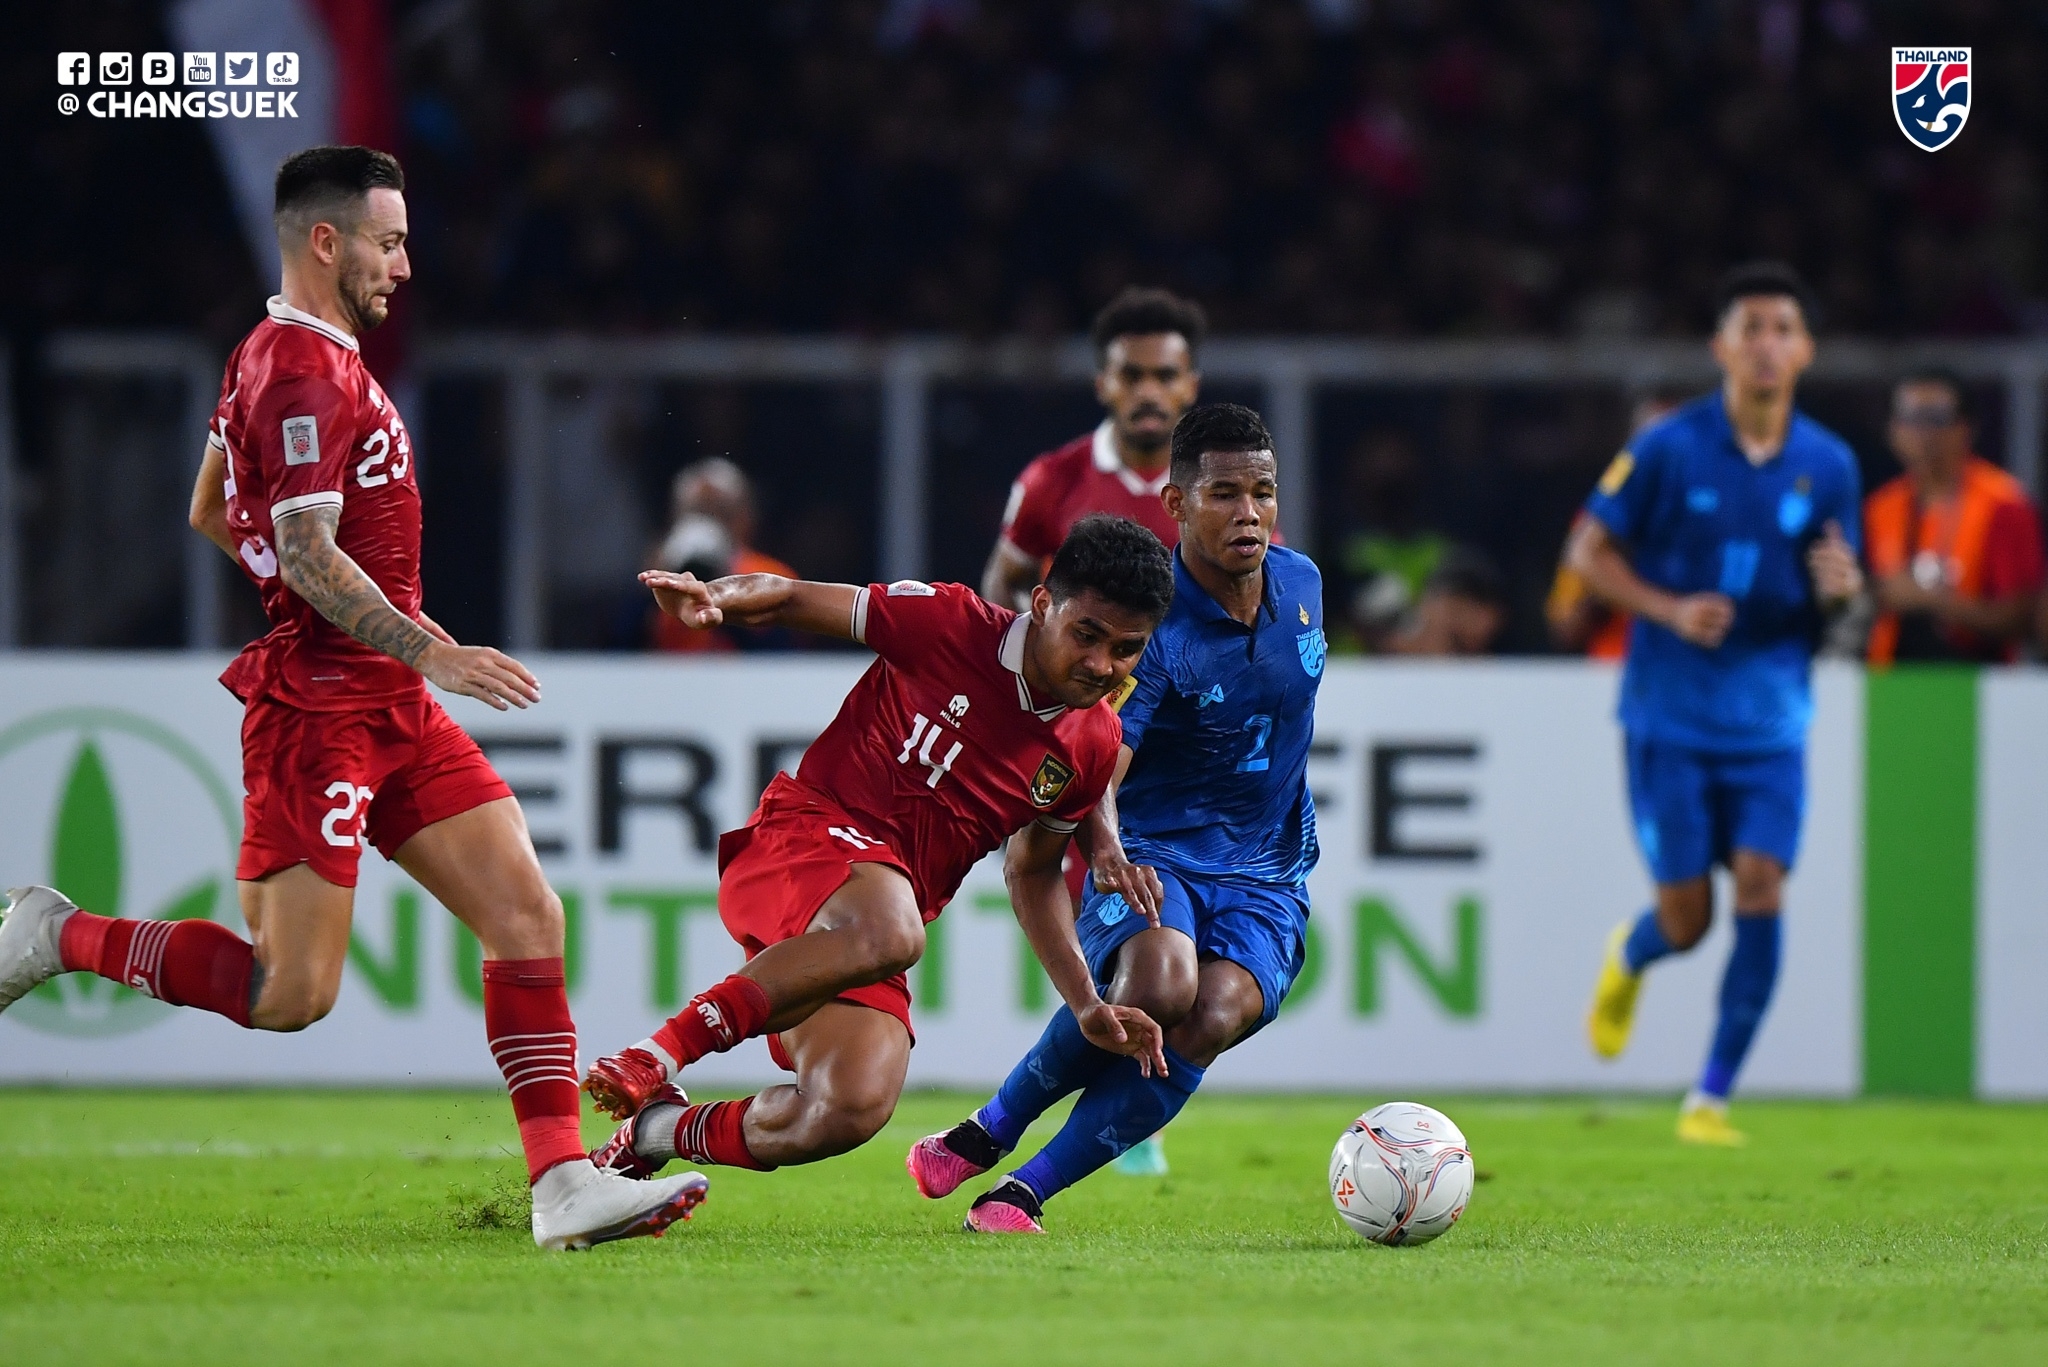 Piala AFF 2022: Gagal Tekuk Thailand, Begini Skenario Timnas Indonesia untuk Lolos ke Semifinal